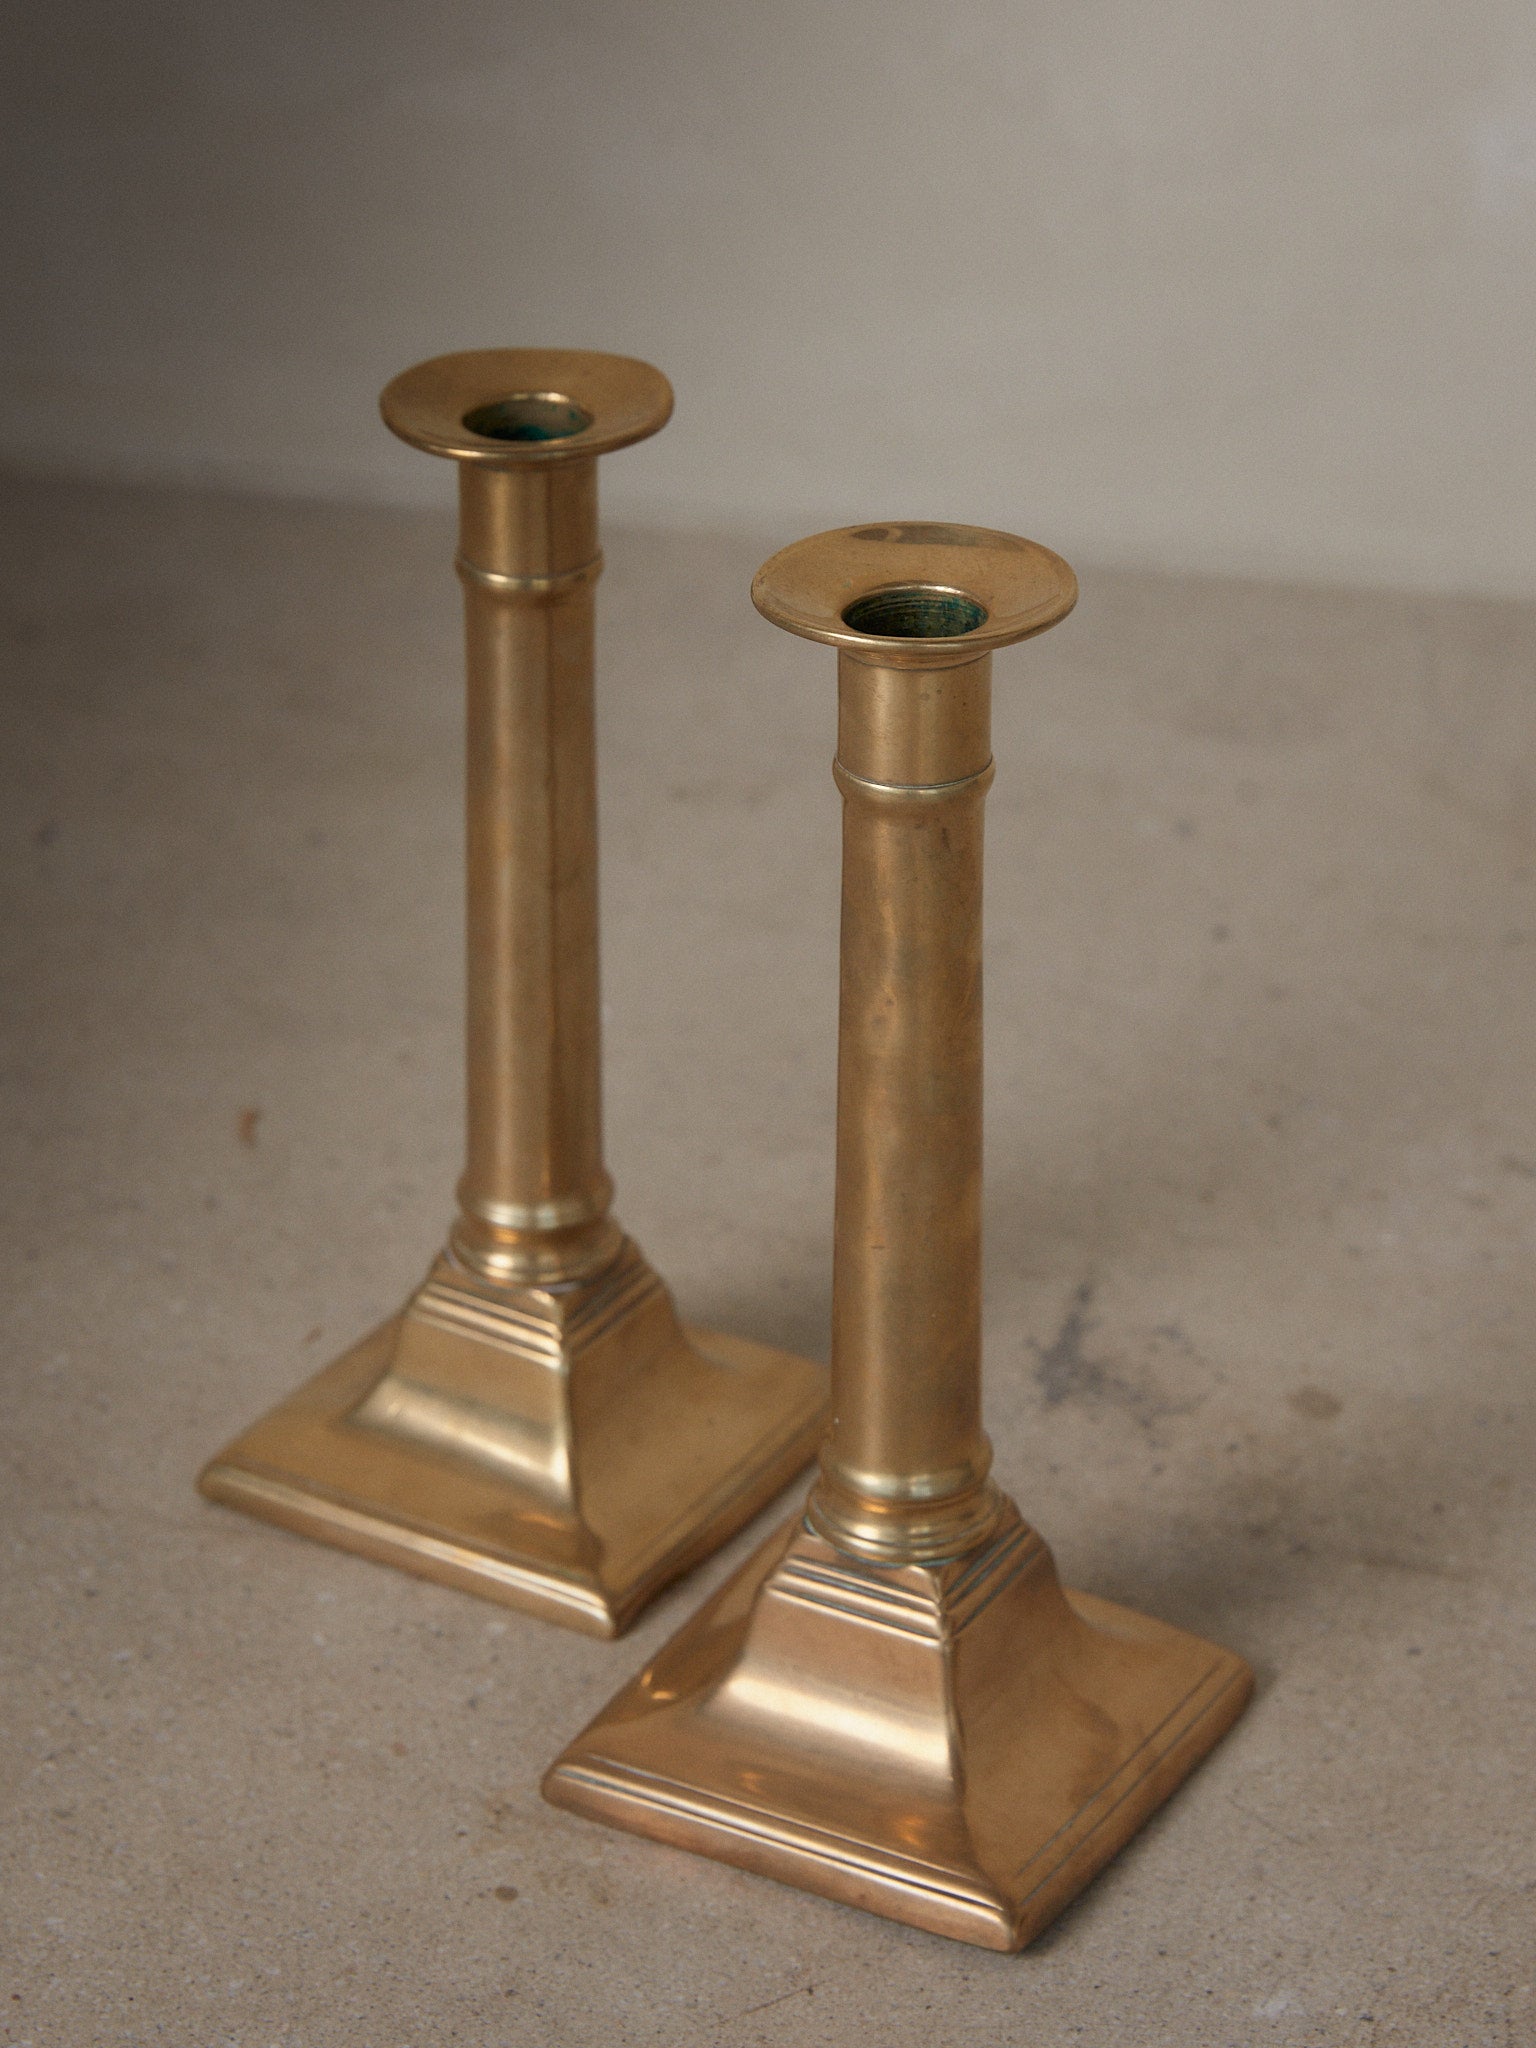 Antique Push up brass candlesticks.